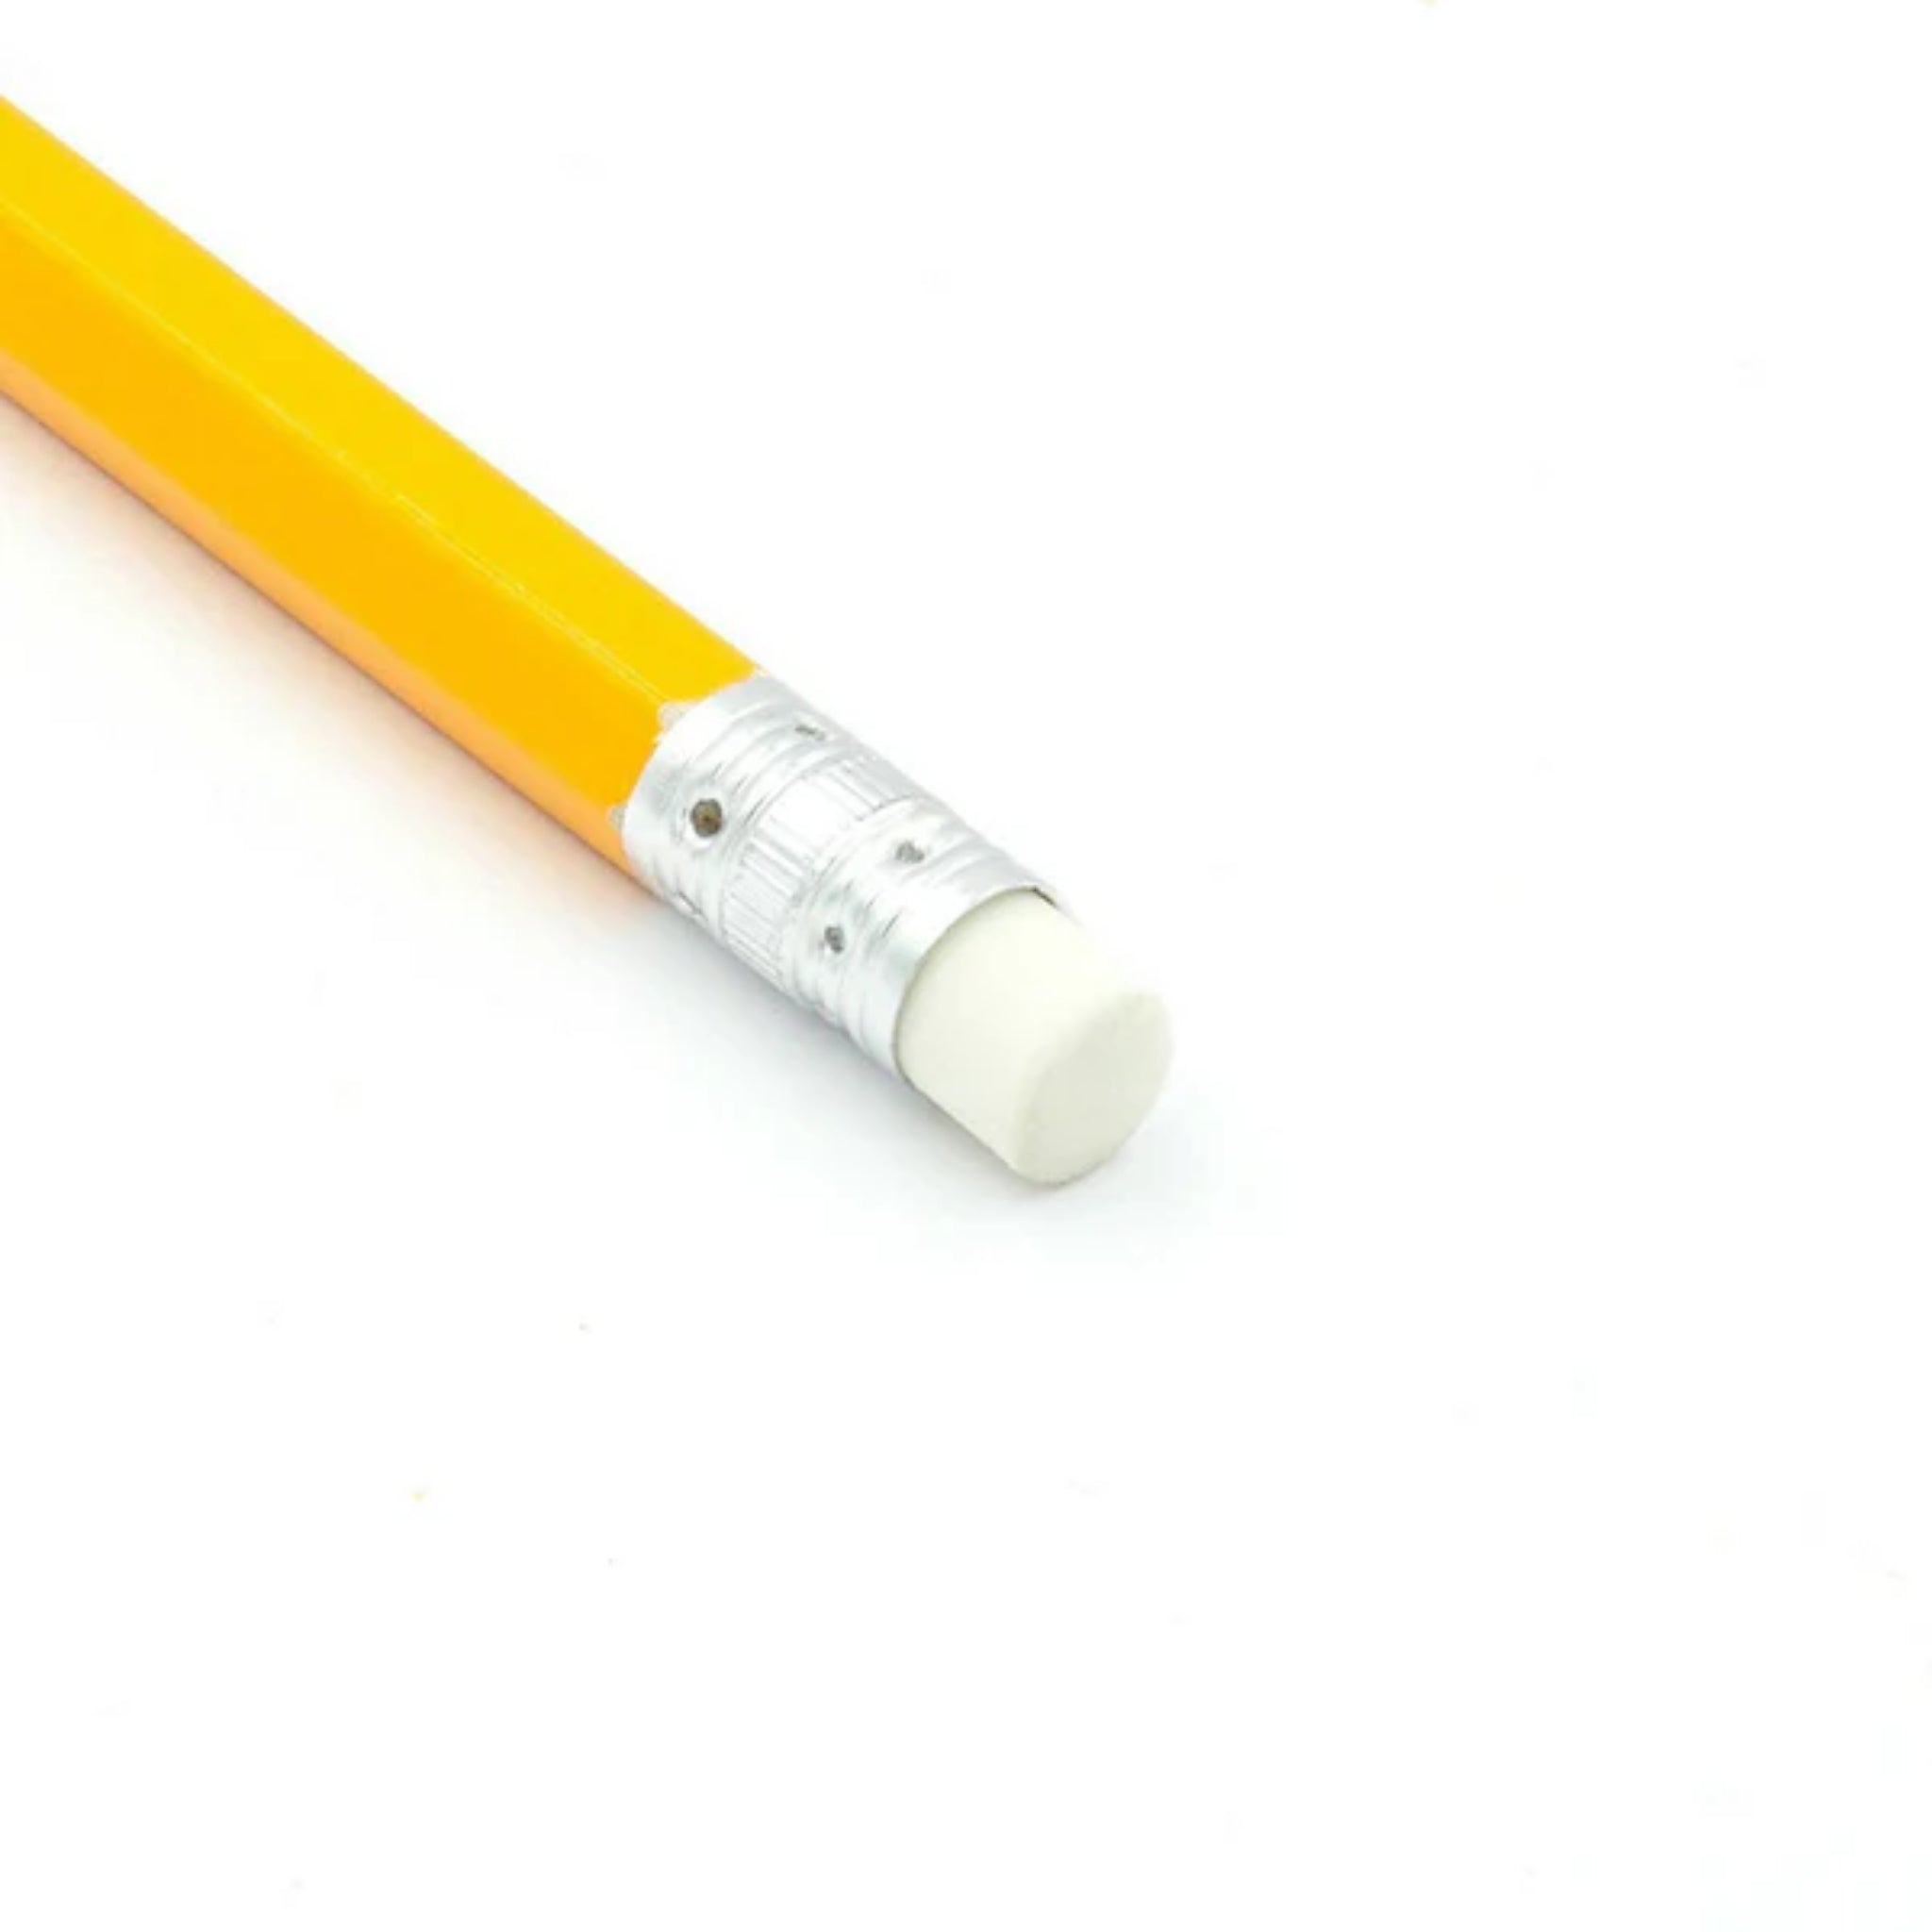 Beclen Harp 1-100 HB Pencils With Eraser Top Office School Craft Art Drawing Break-Resistant